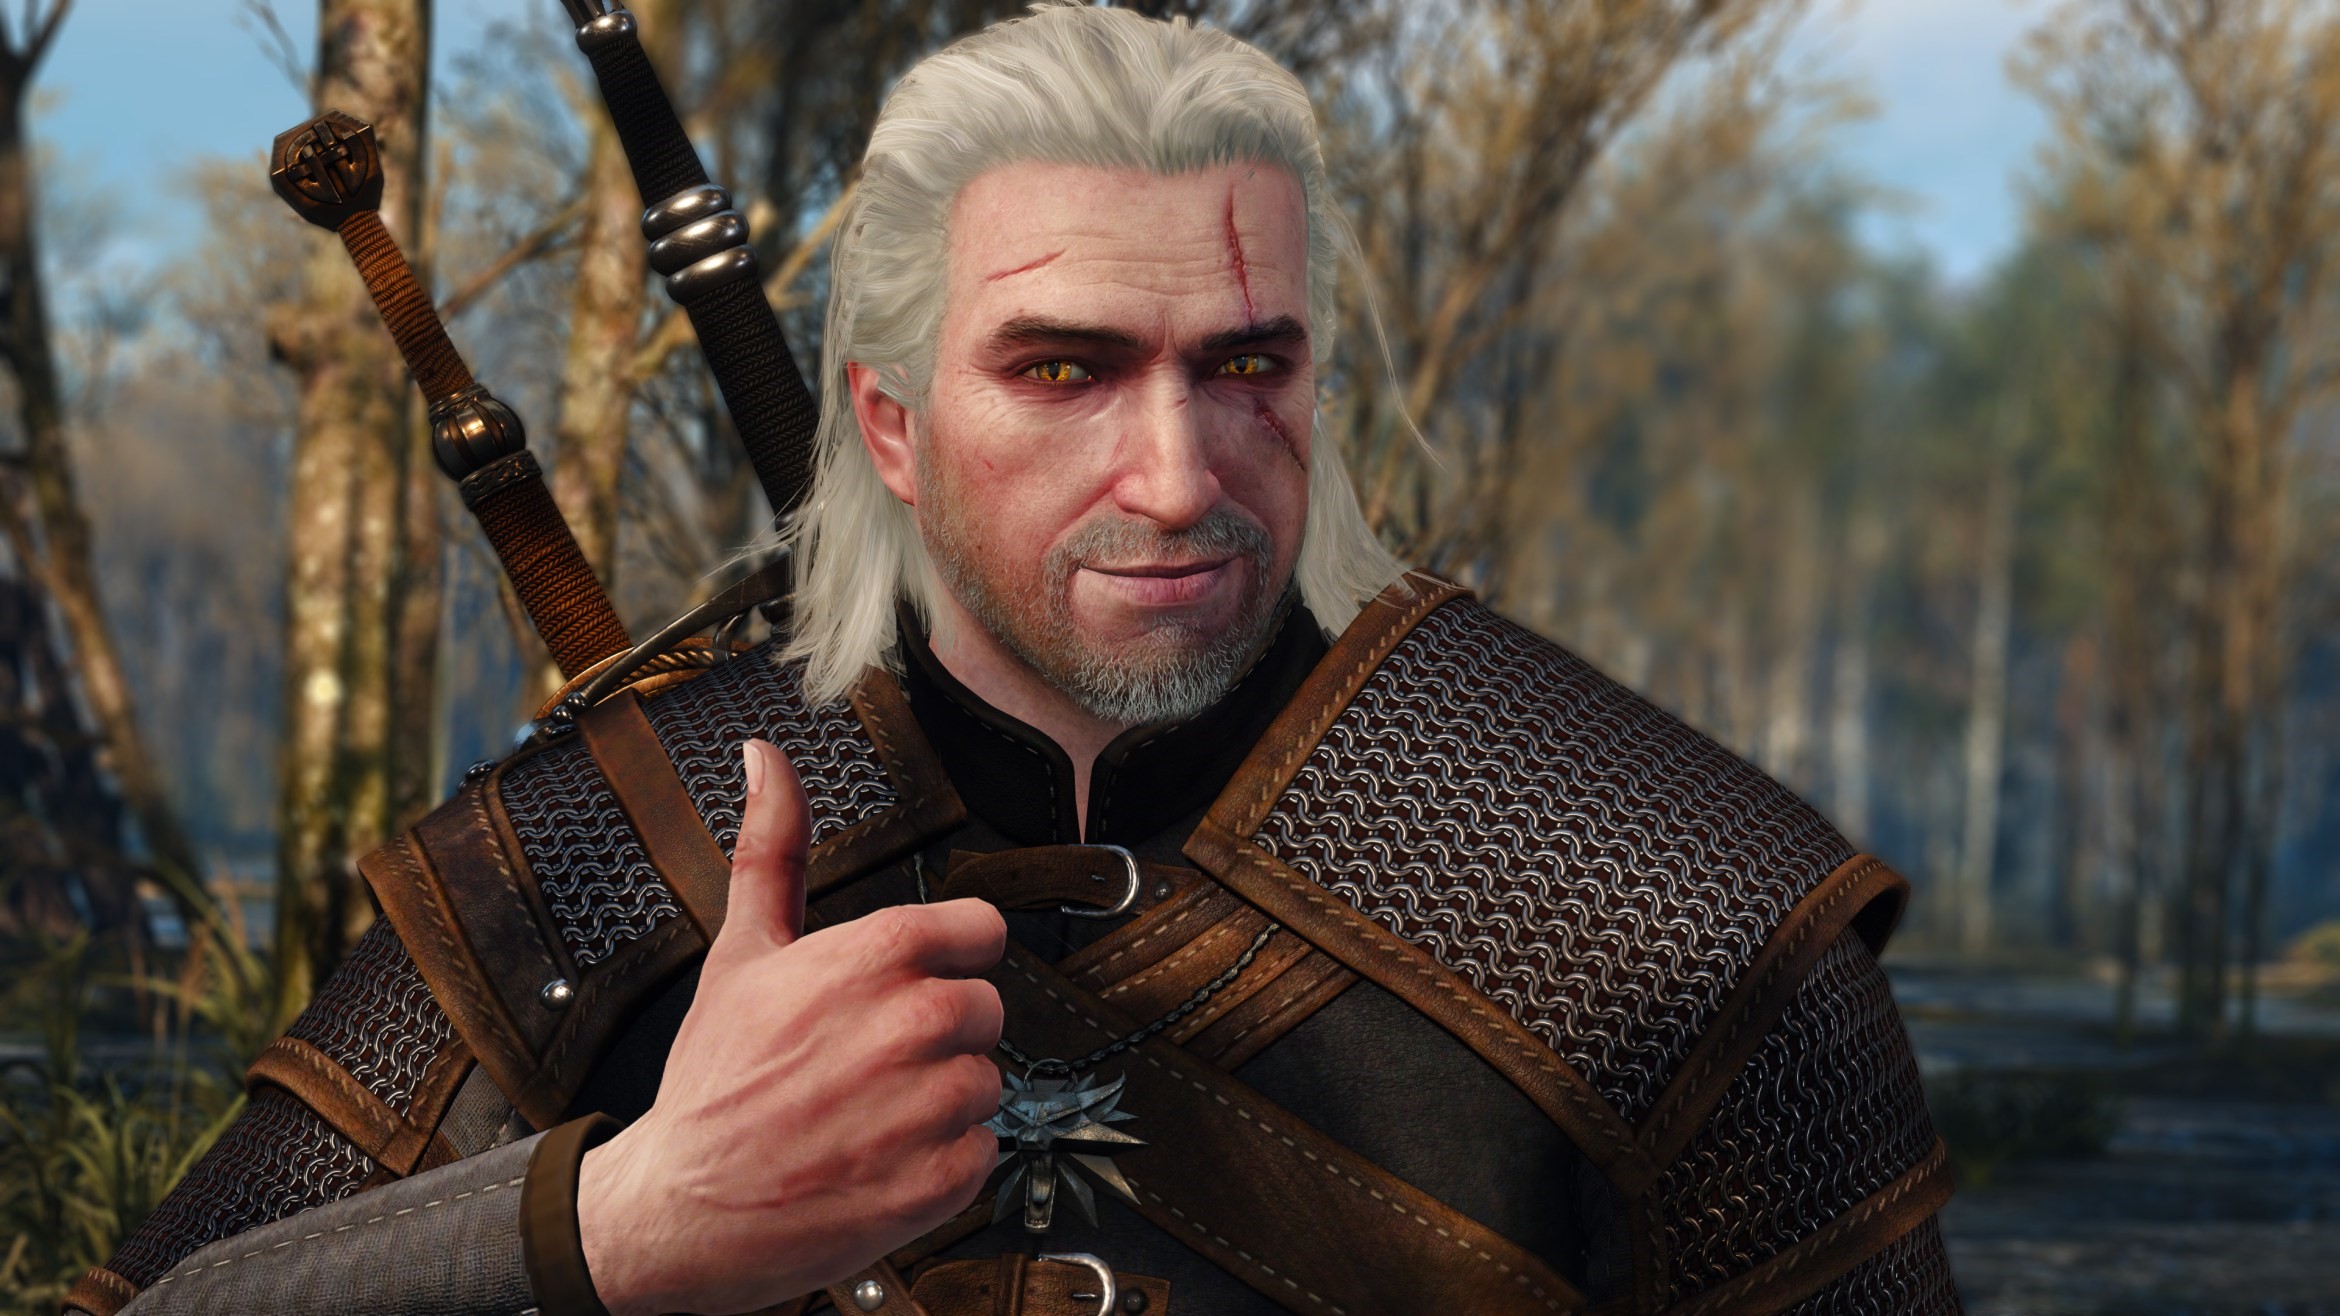 Geralt thumbs up